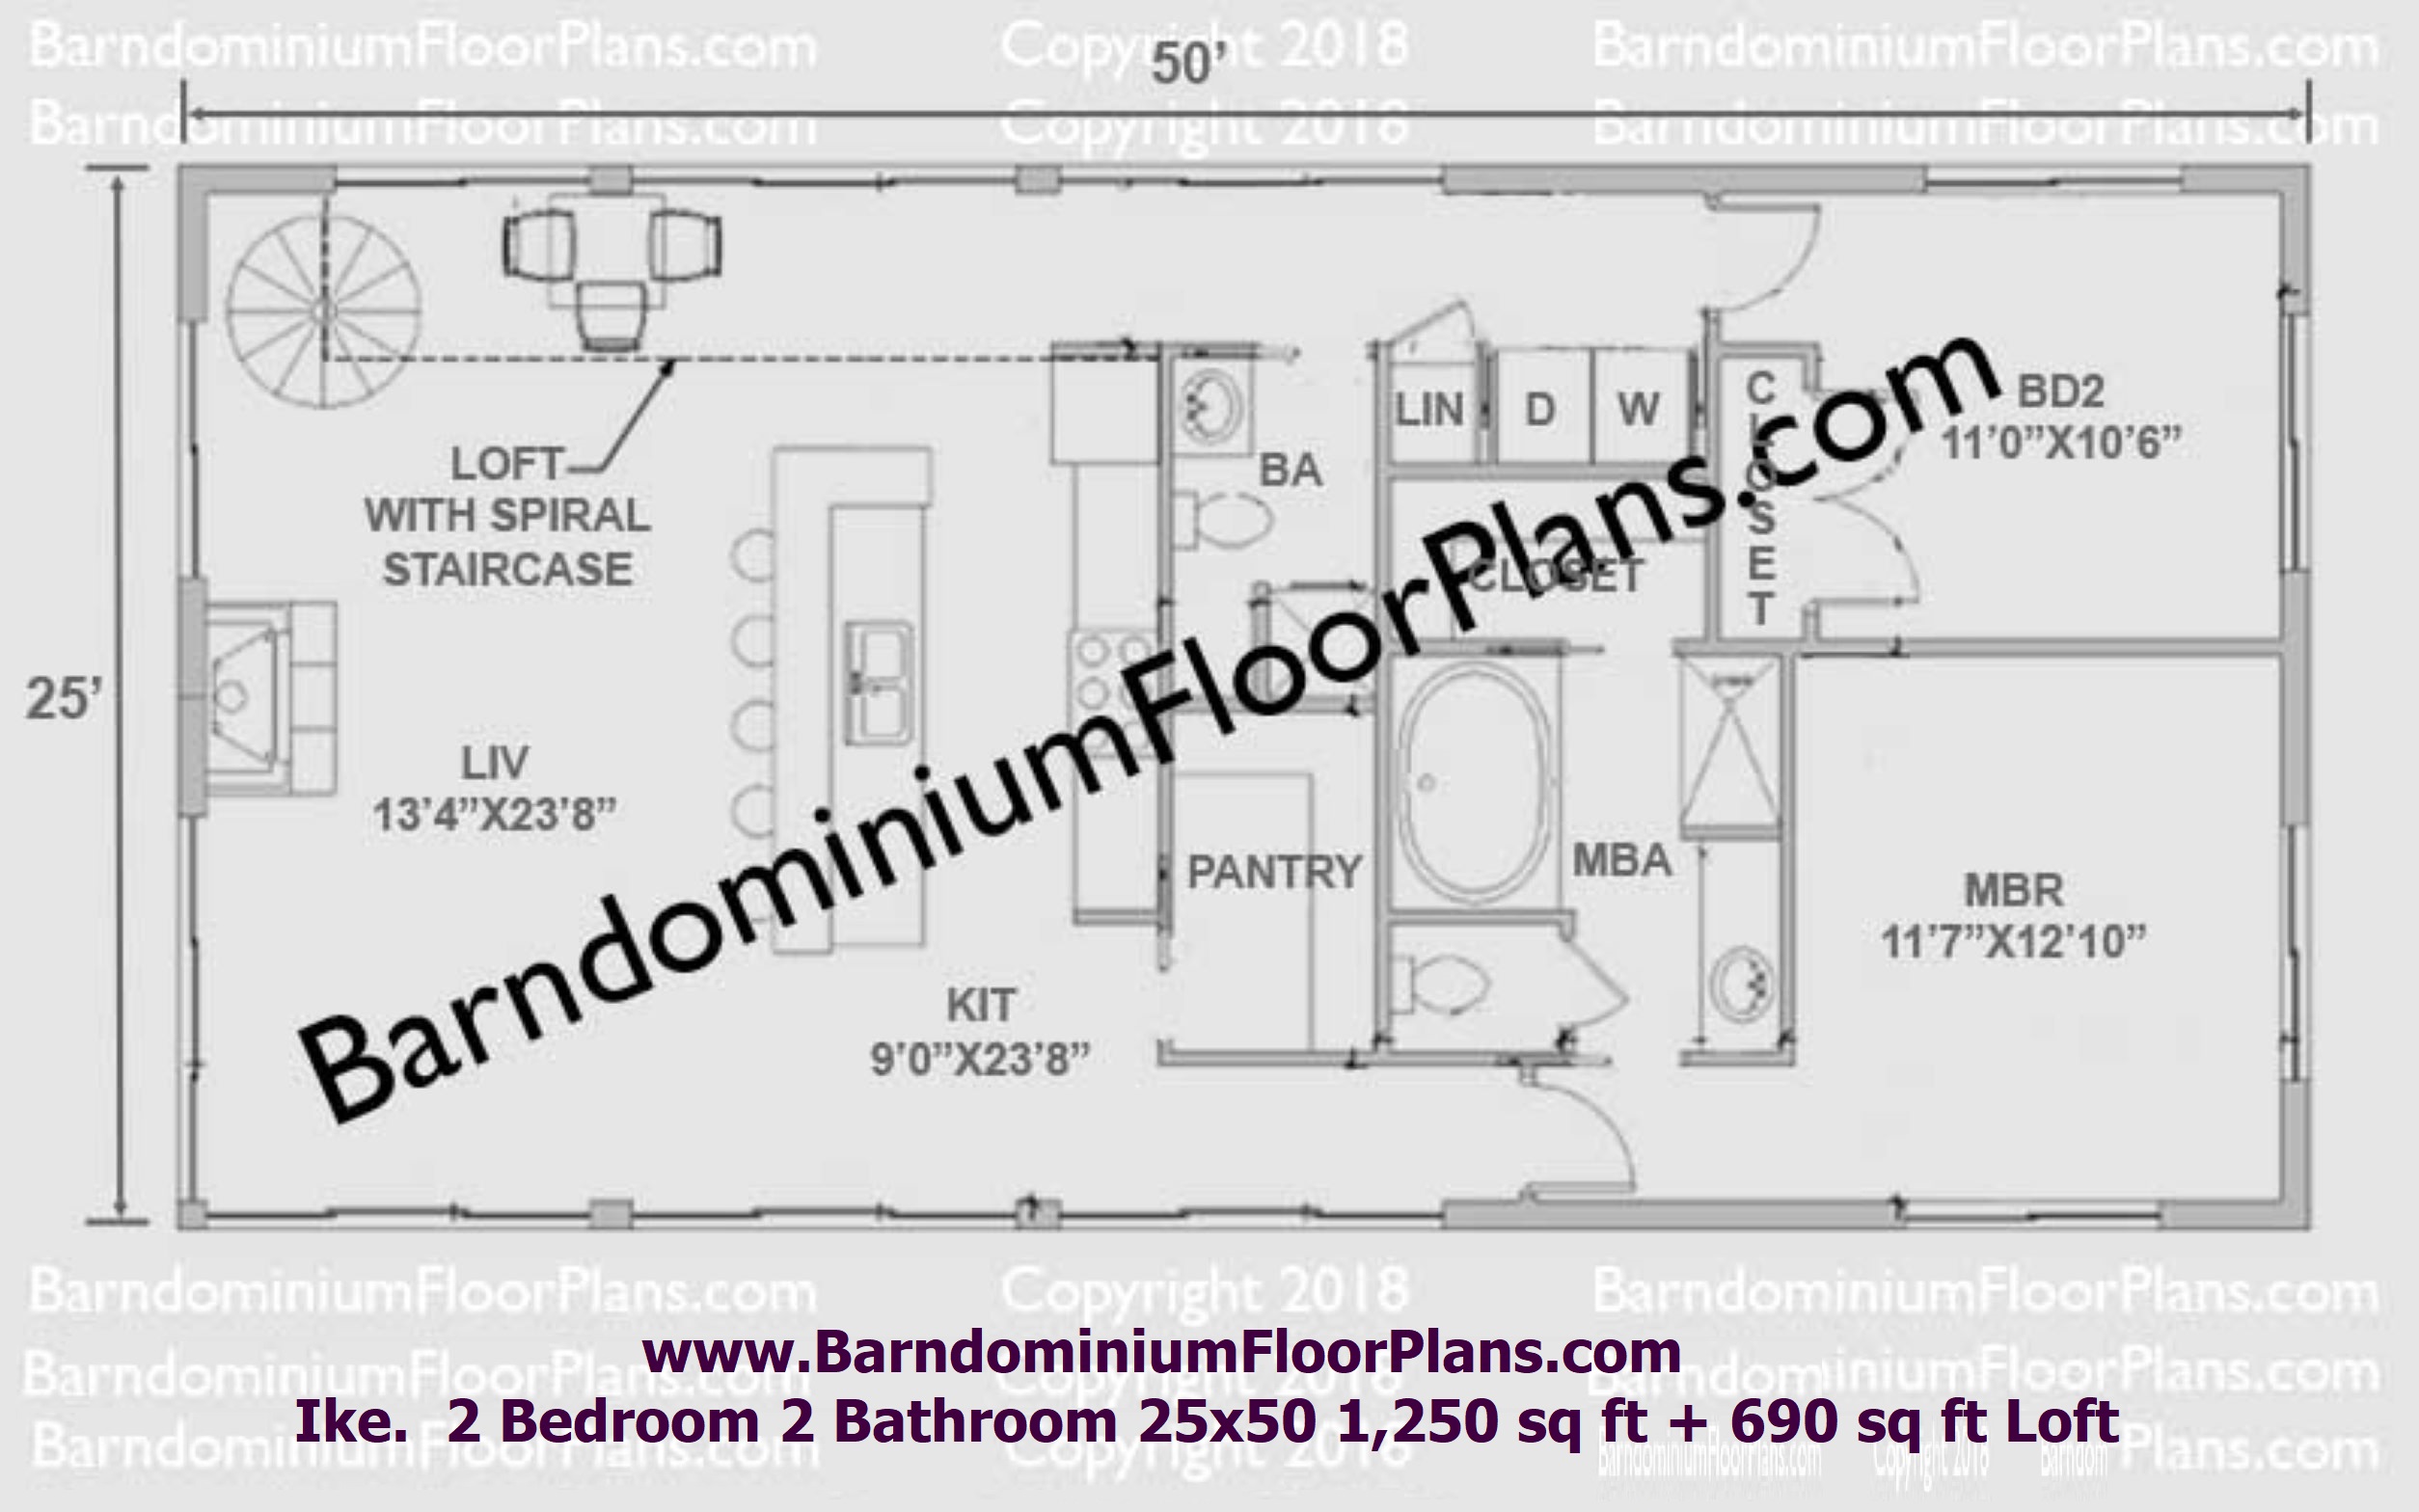 barndominiumfloorplans.com - Ike-barndominium-floor-plan-2550-2BD-2BA-plus-loft